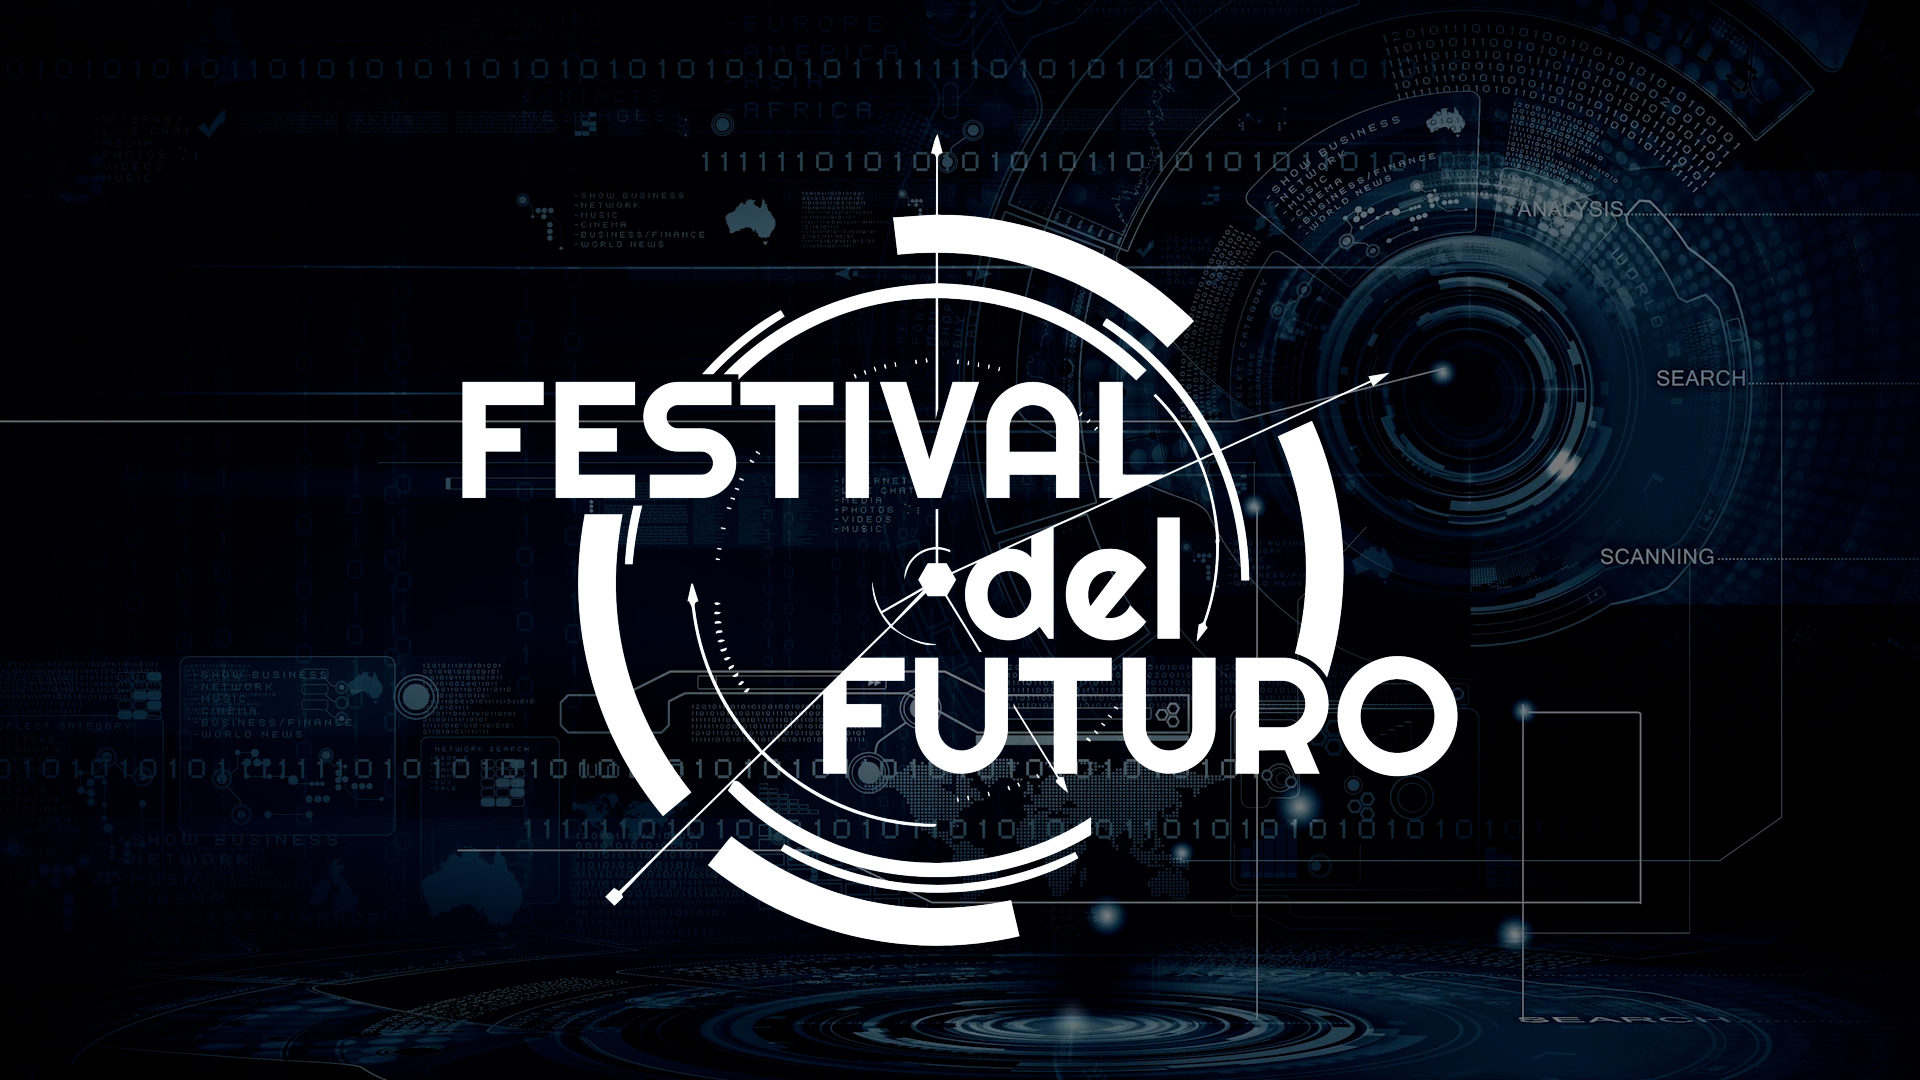 Festival del Futuro. Dal 18 al 20 novembre a Veronafiere